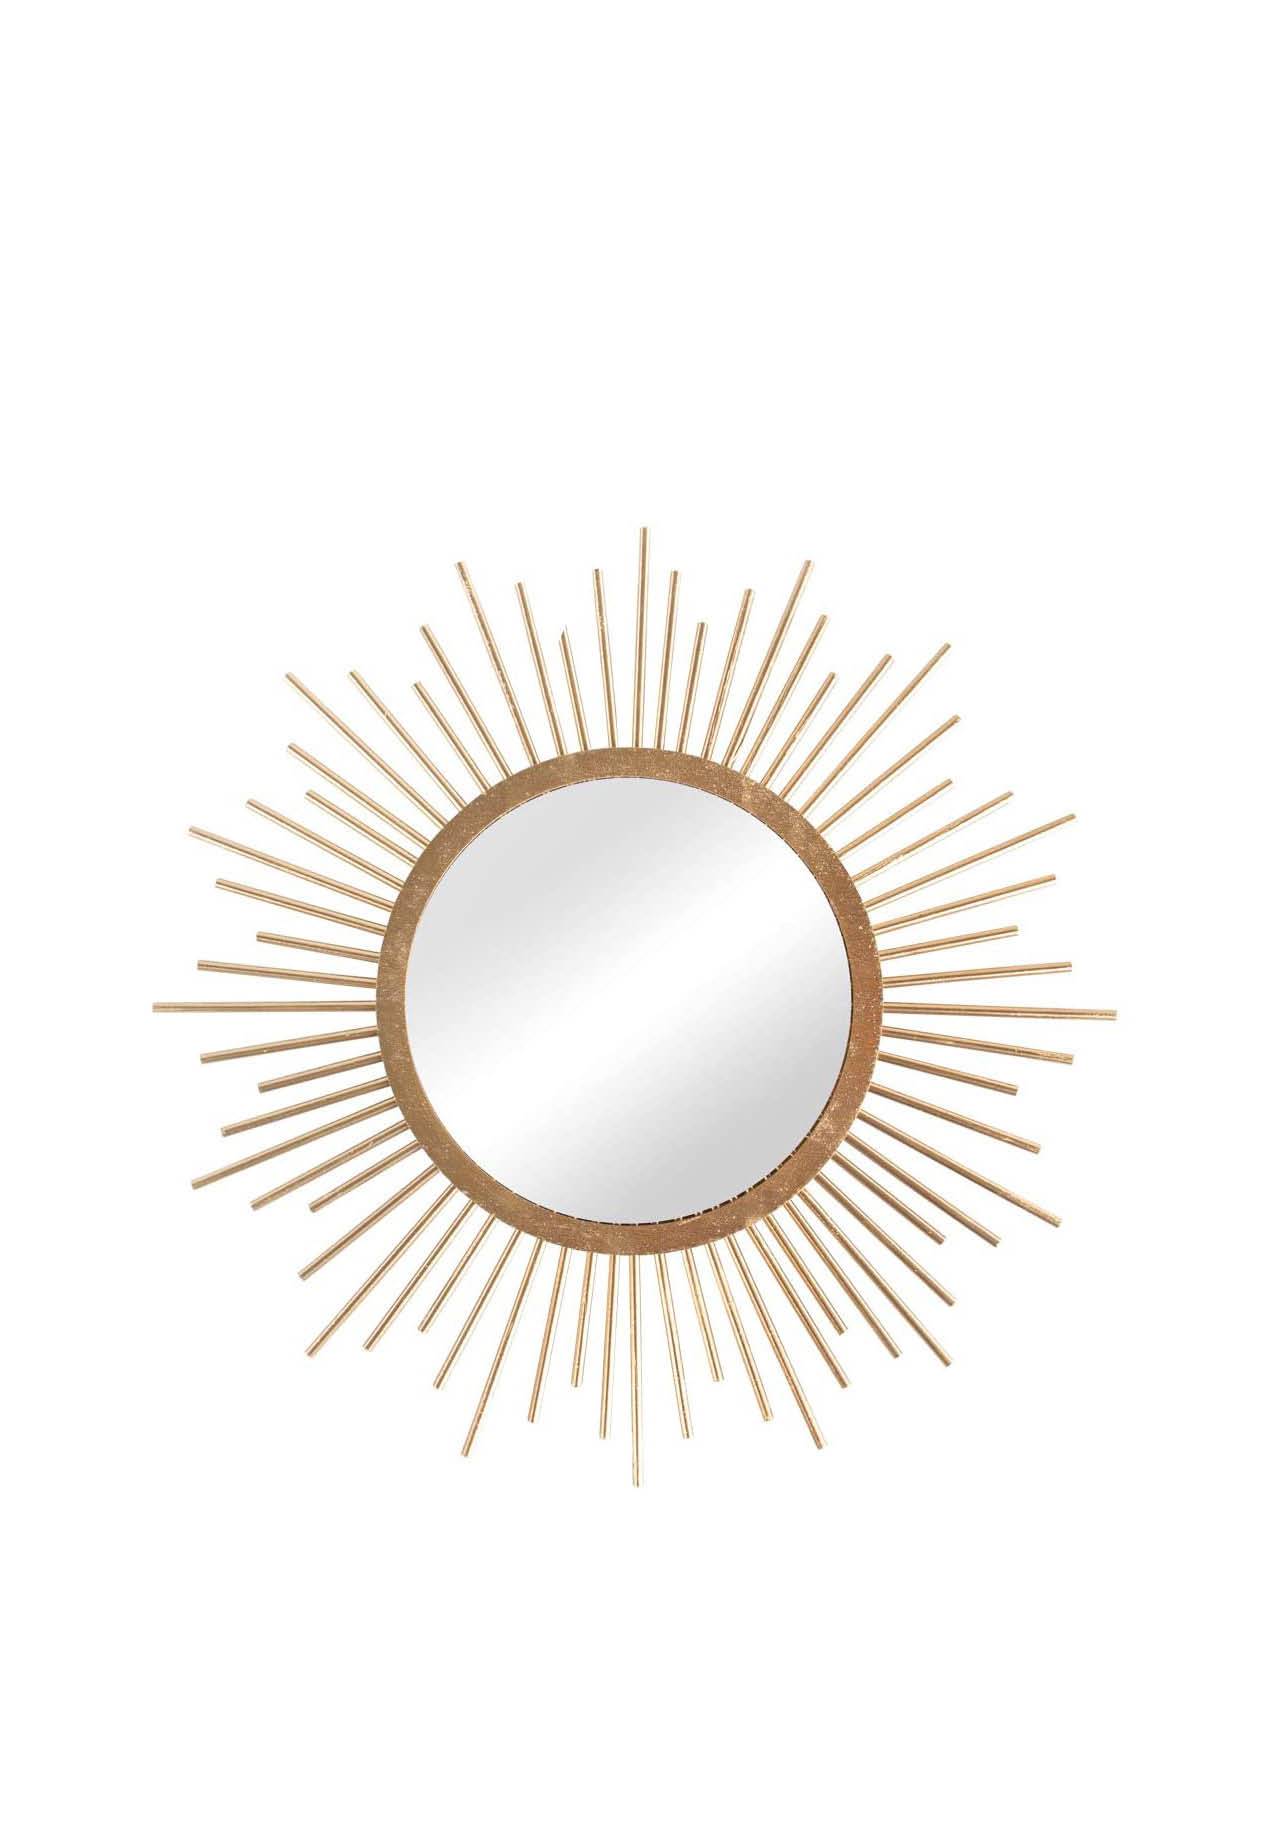 espejo circular sol articulos bonitos decoracion terraza balcon ventana Espejo solar pequeño, 32 cm de diámetro, natural, diámetro del espejo 15 cm, caja de 1 juego